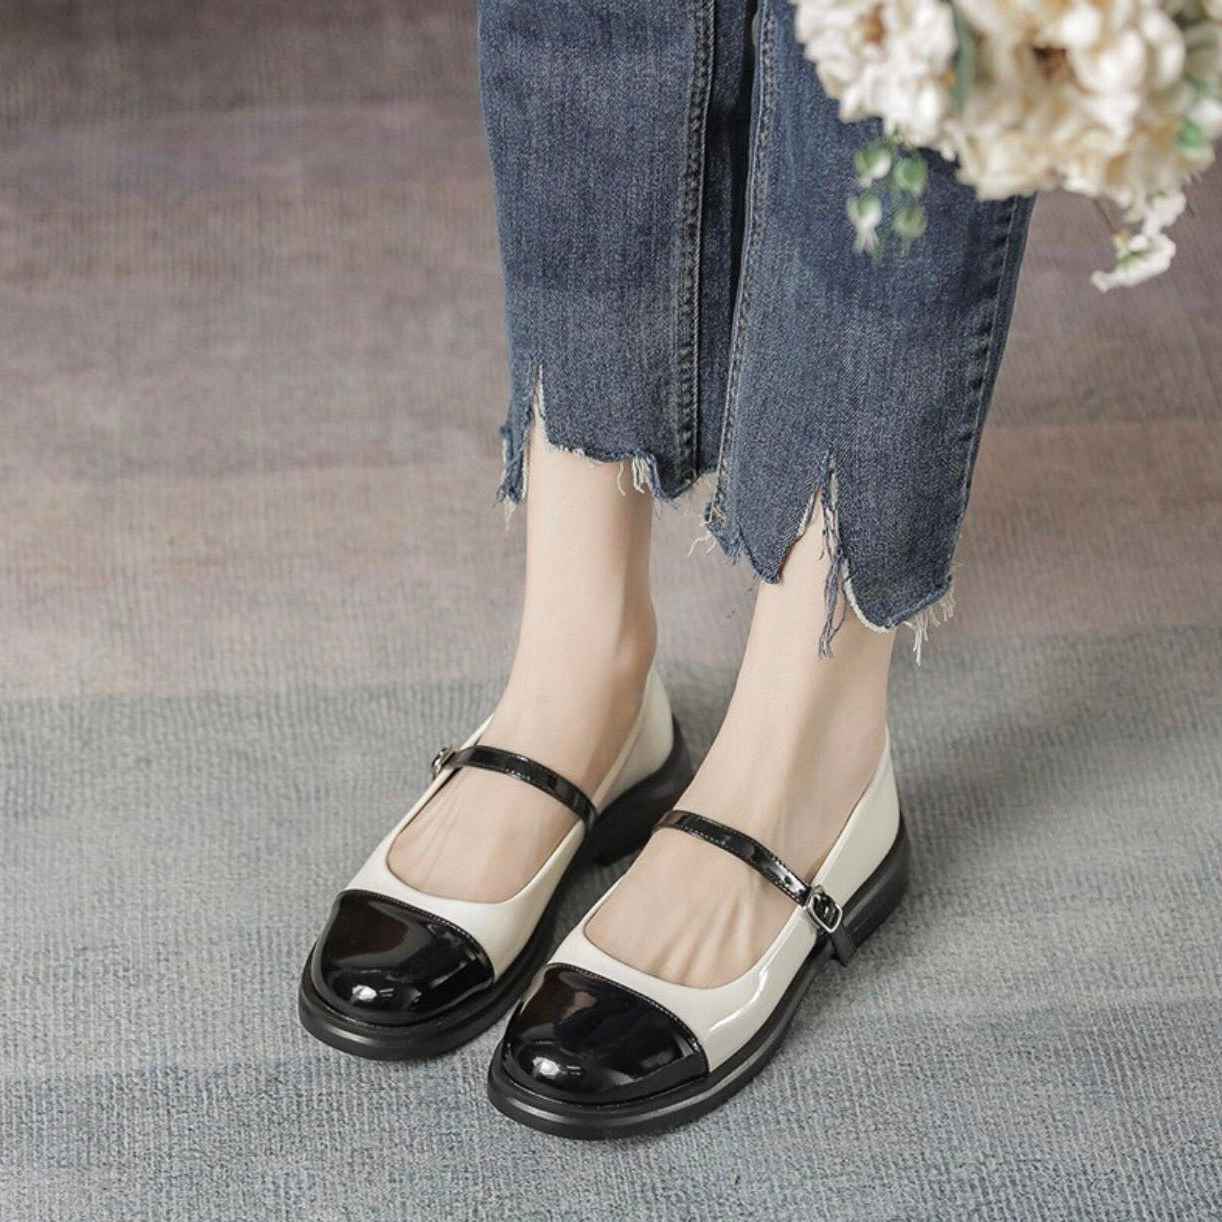 giày búp bê nữ đẹp – Thời trang Alitaobao.vn